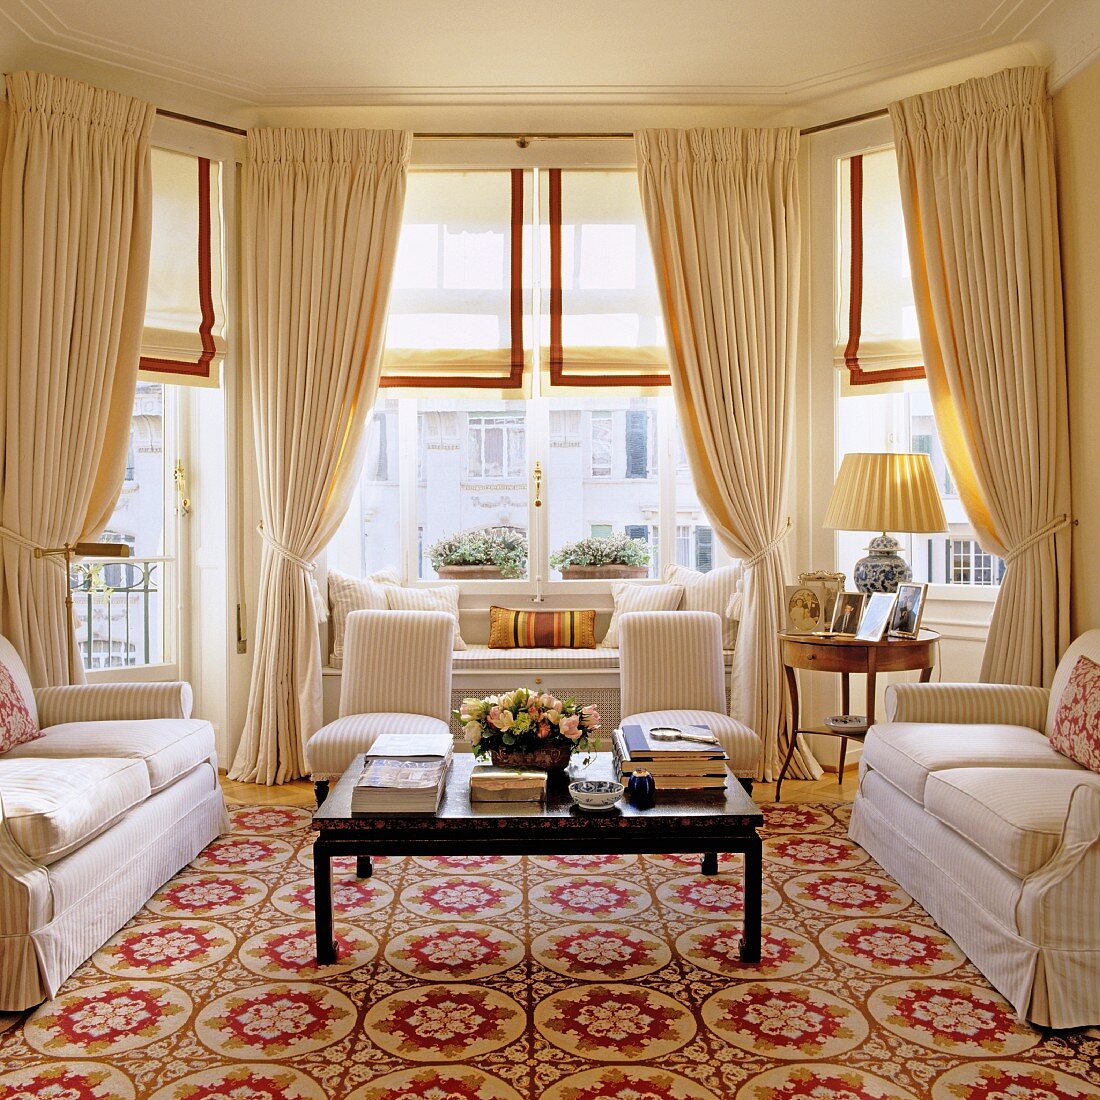 Luxuriös ausgestattetes Erkerzimmer mit Sofagarnitur und Couchtisch auf gemustertem Teppich vor Fenstern mit drapierten Vorhängen